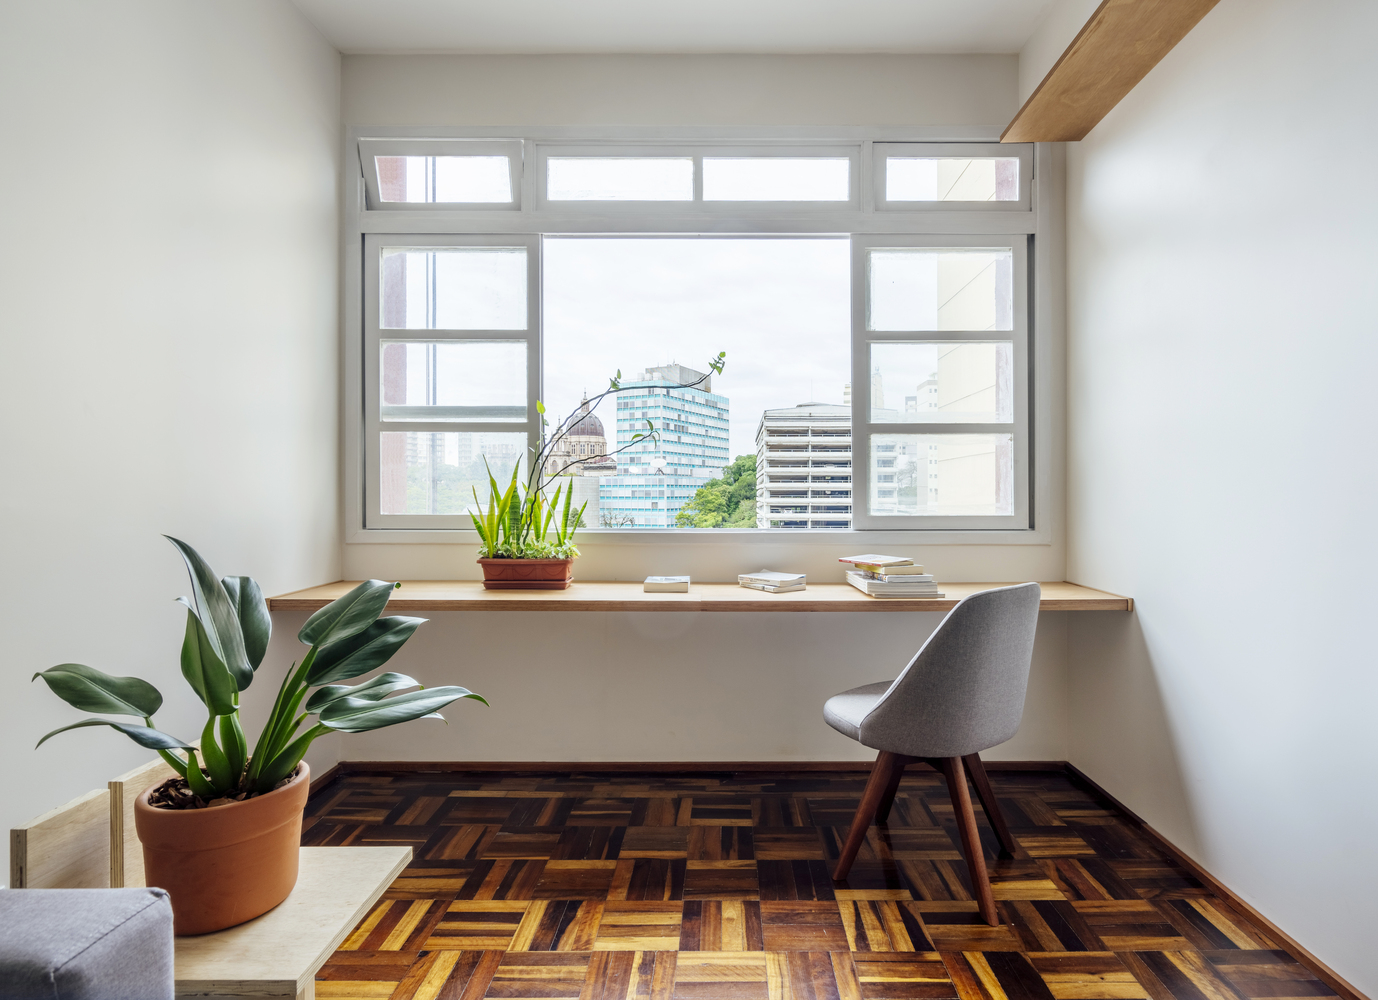 Góc làm việc thoáng sáng cạnh cửa sổ phòng khách với thiết kế đơn giản gồm phản gỗ gắn tường, ghế tựa gọn xinh và chậu cây xanh trang trí.